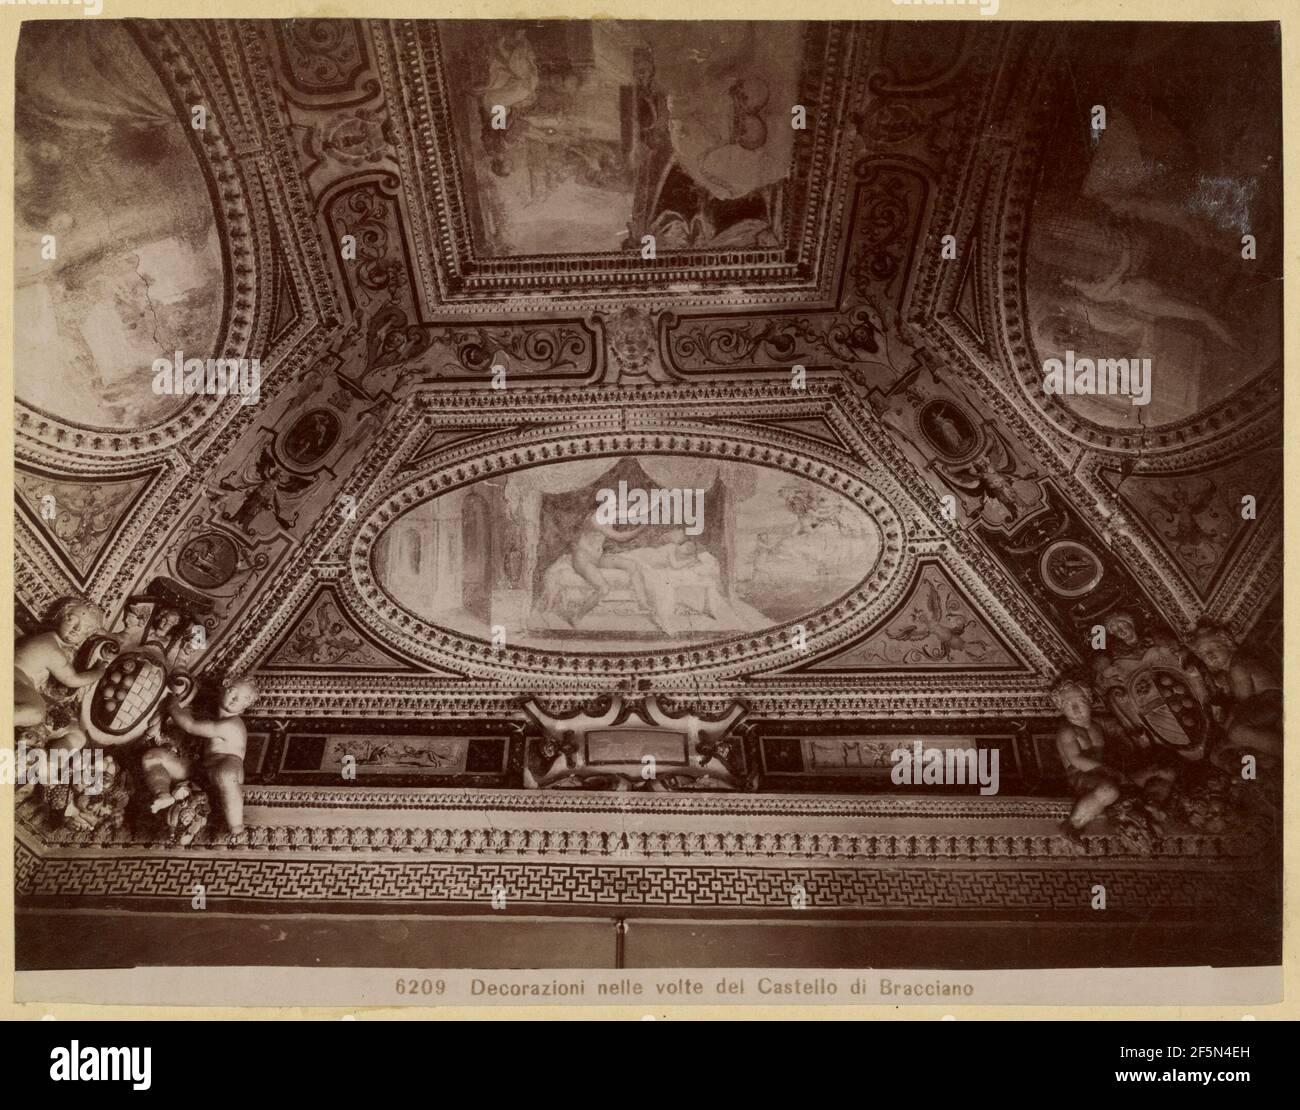 Decorazioni nelle volte del Castello di Bracciano. Unknown Stock Photo -  Alamy